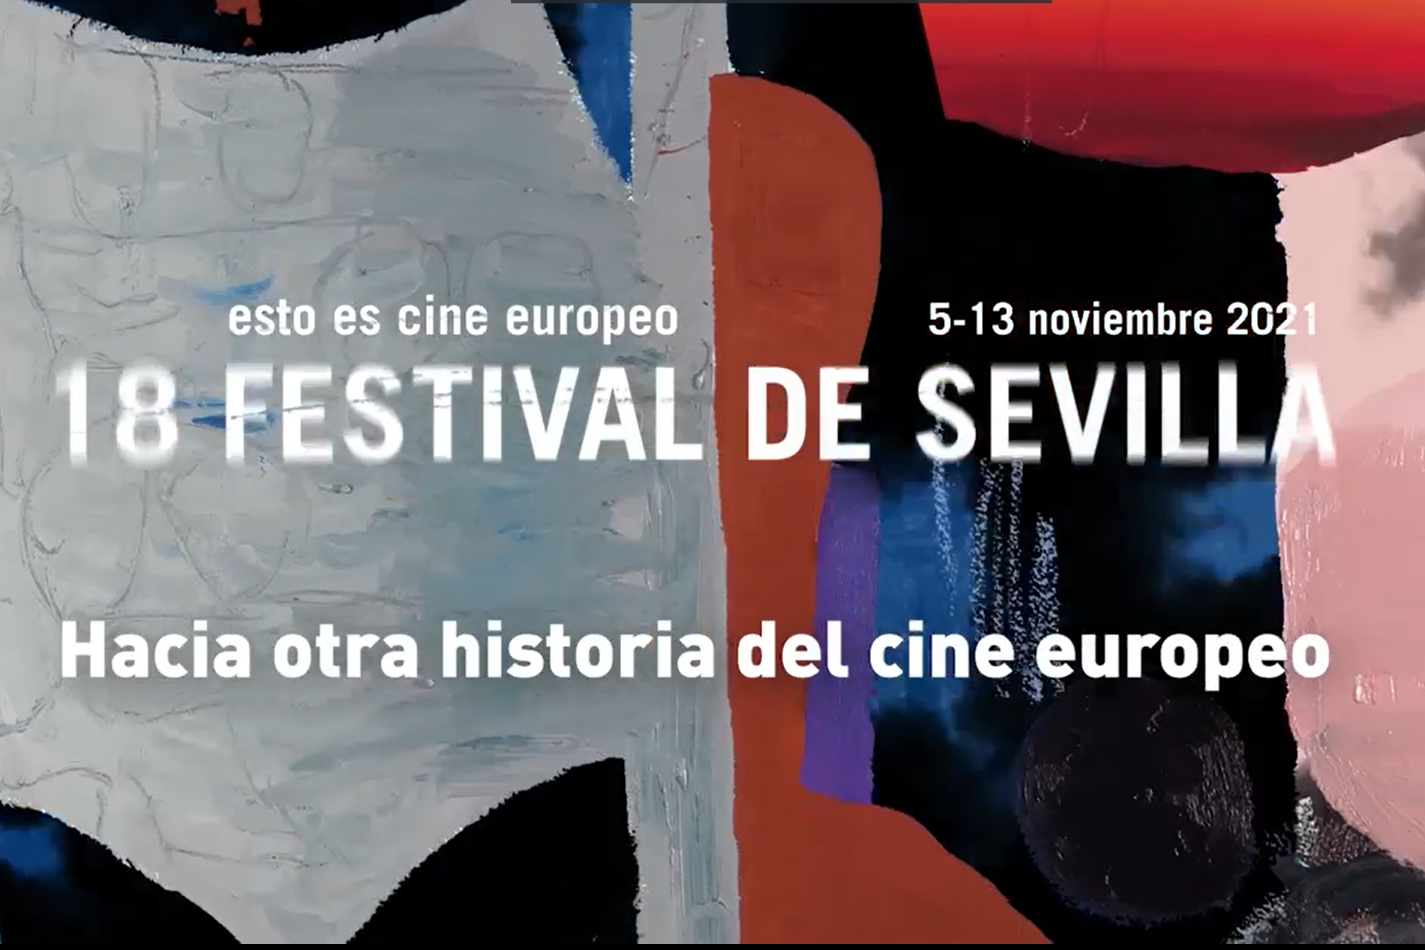 18-festival-cine-sevilla-criticas-seccion-oficial.png